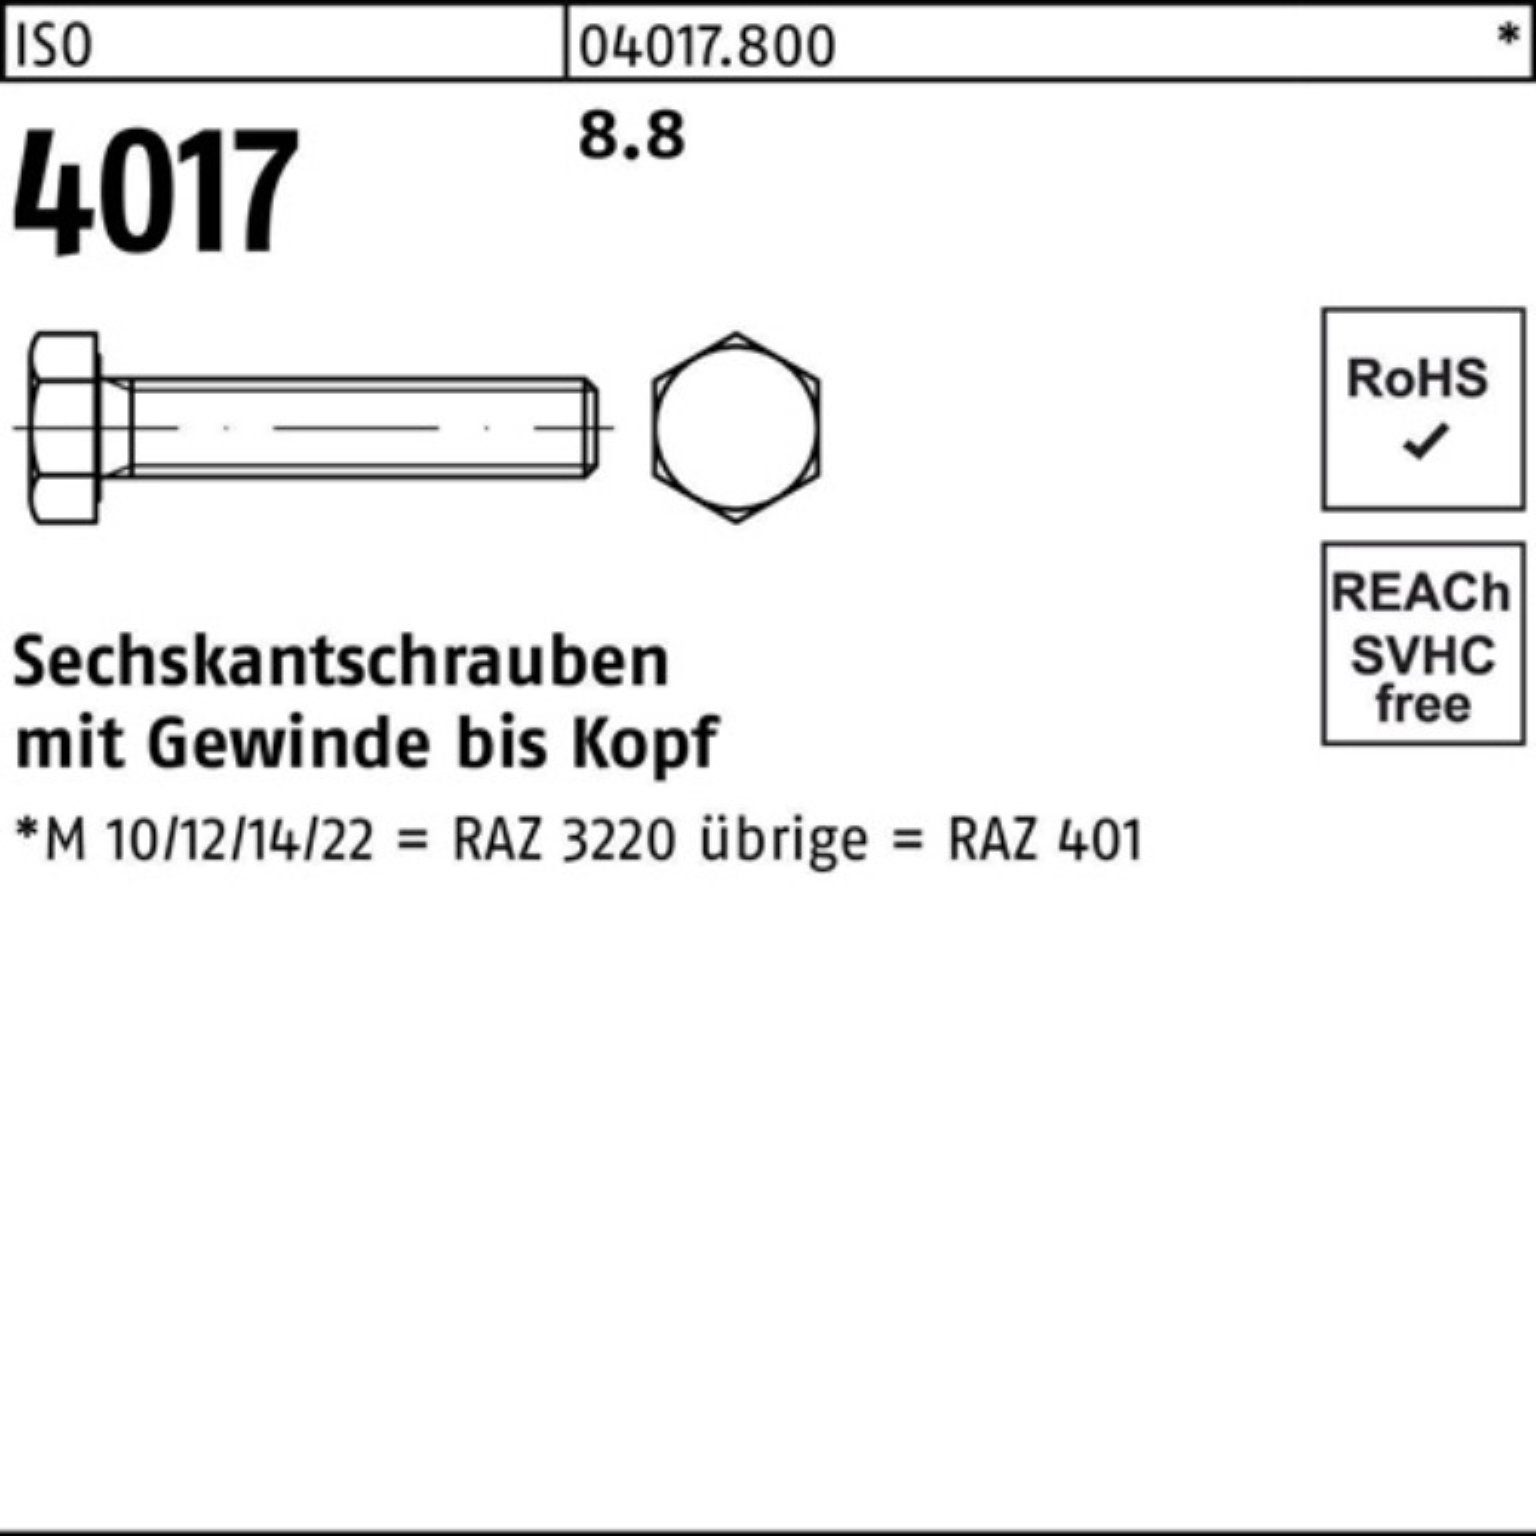 1 4017 401 Sechskantschraube Sechskantschraube M30x ISO ISO 100er 100 8.8 Bufab Stück Pack VG